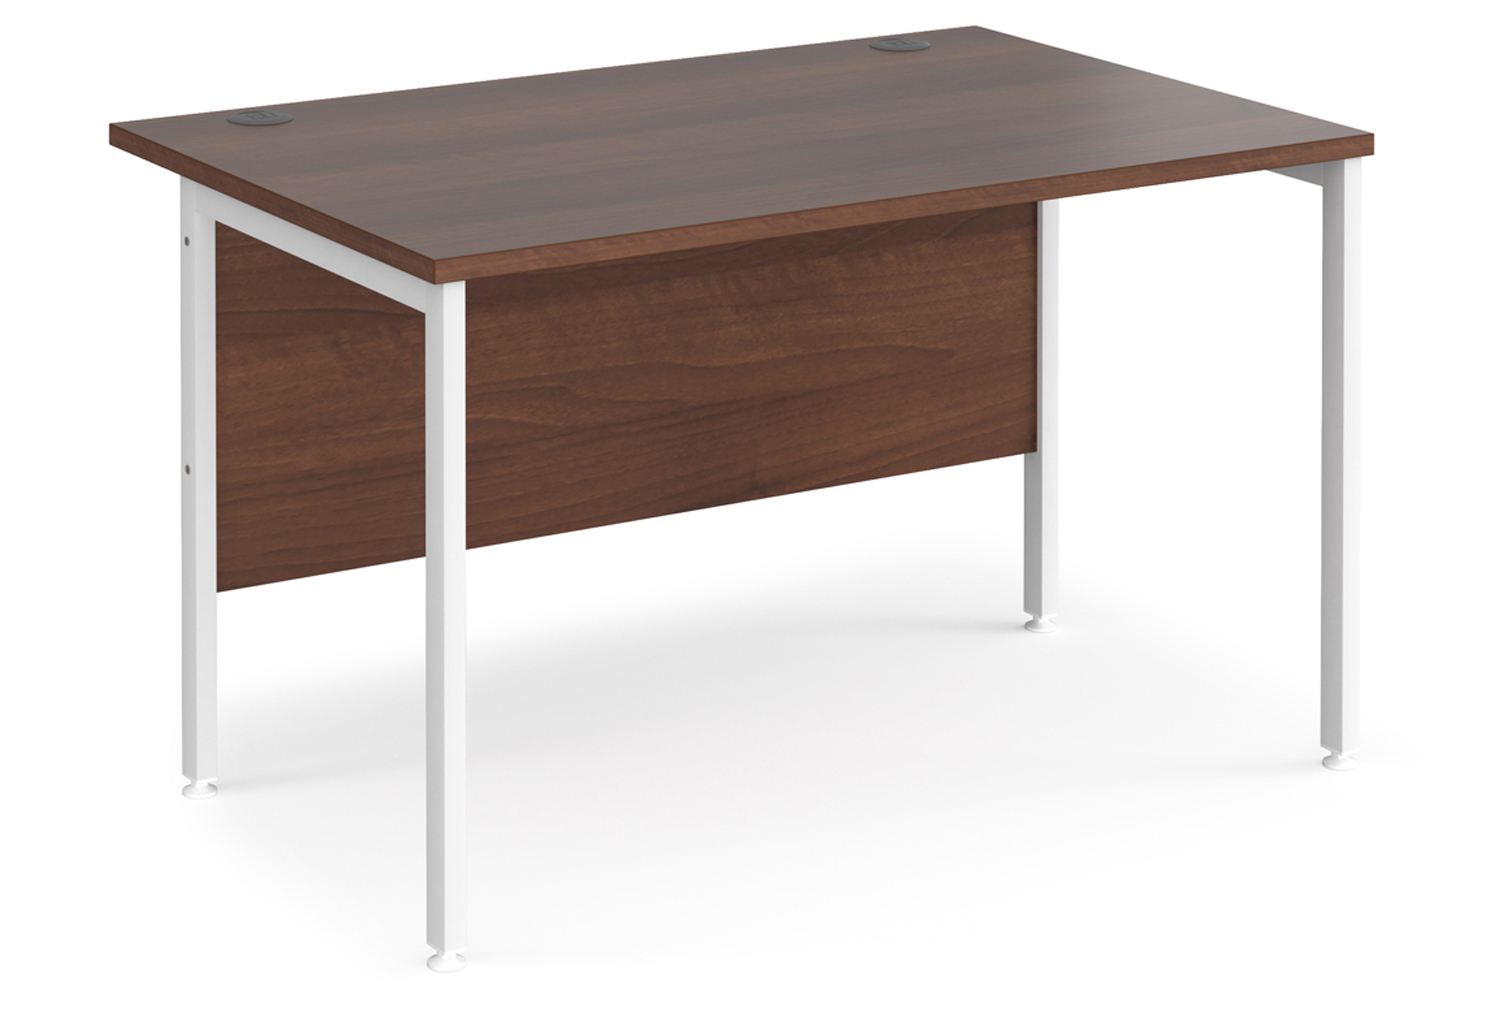 Value Line Deluxe H-Leg Rectangular Office Desk (White Legs), 120wx80dx73h (cm), Walnut